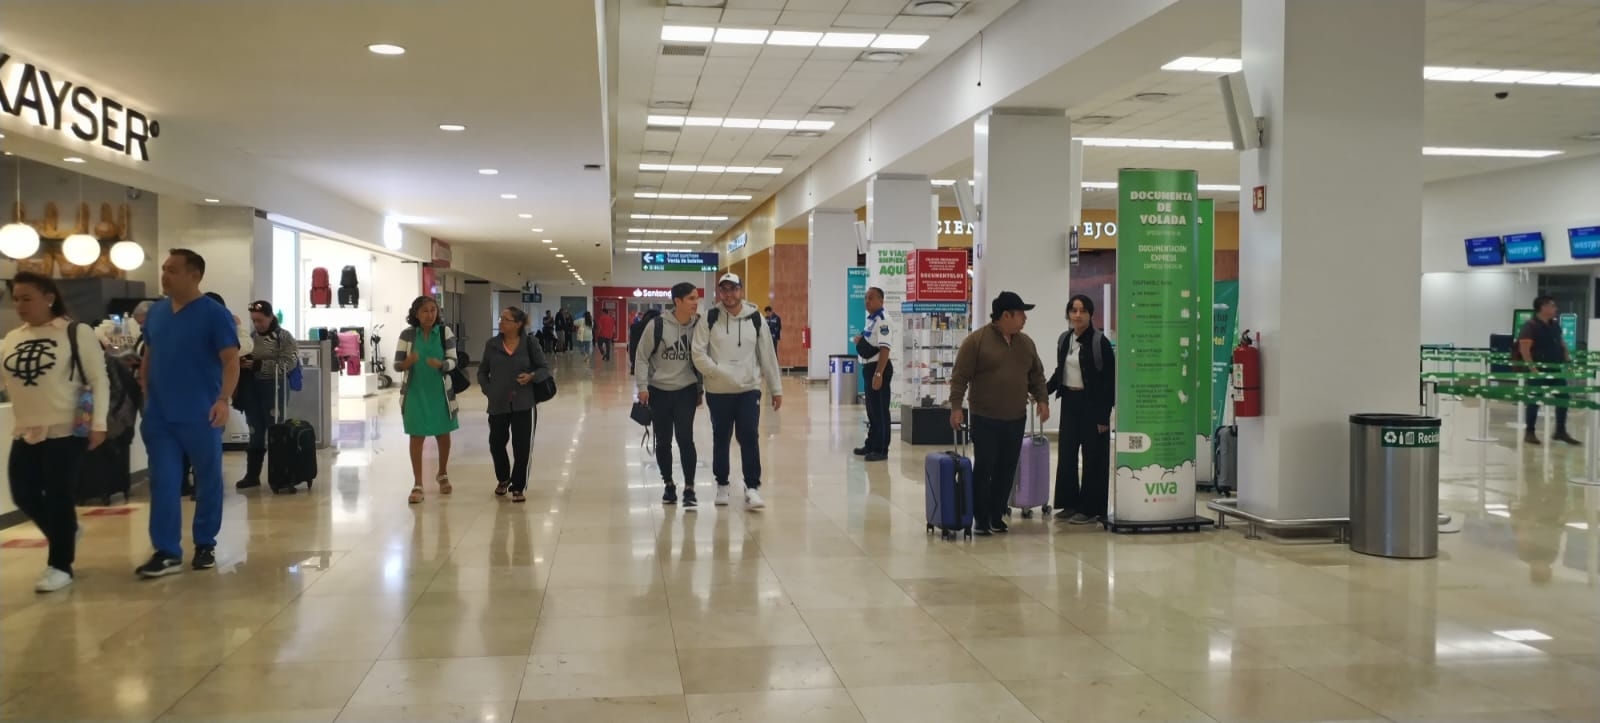 El aeropuerto de Mérida no registra afectaciones en sus vuelos